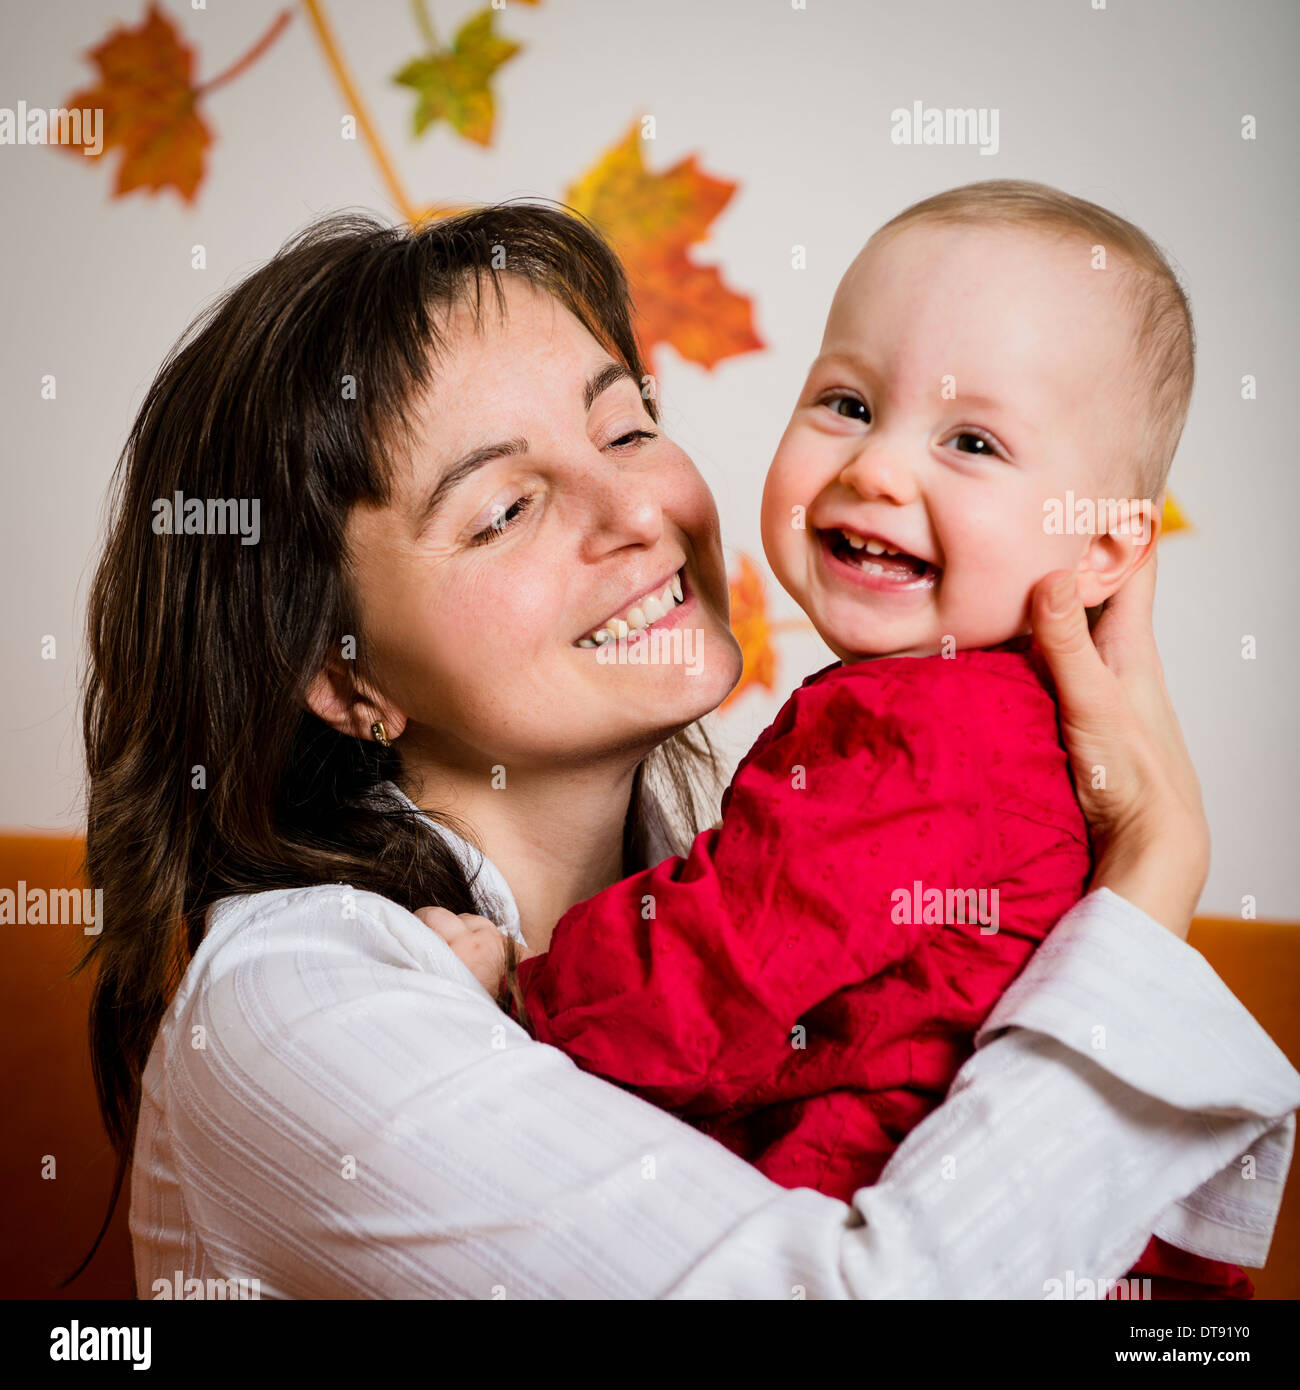 Retrato de joven madre sonriente con su bebé feliz - indoor Foto de stock